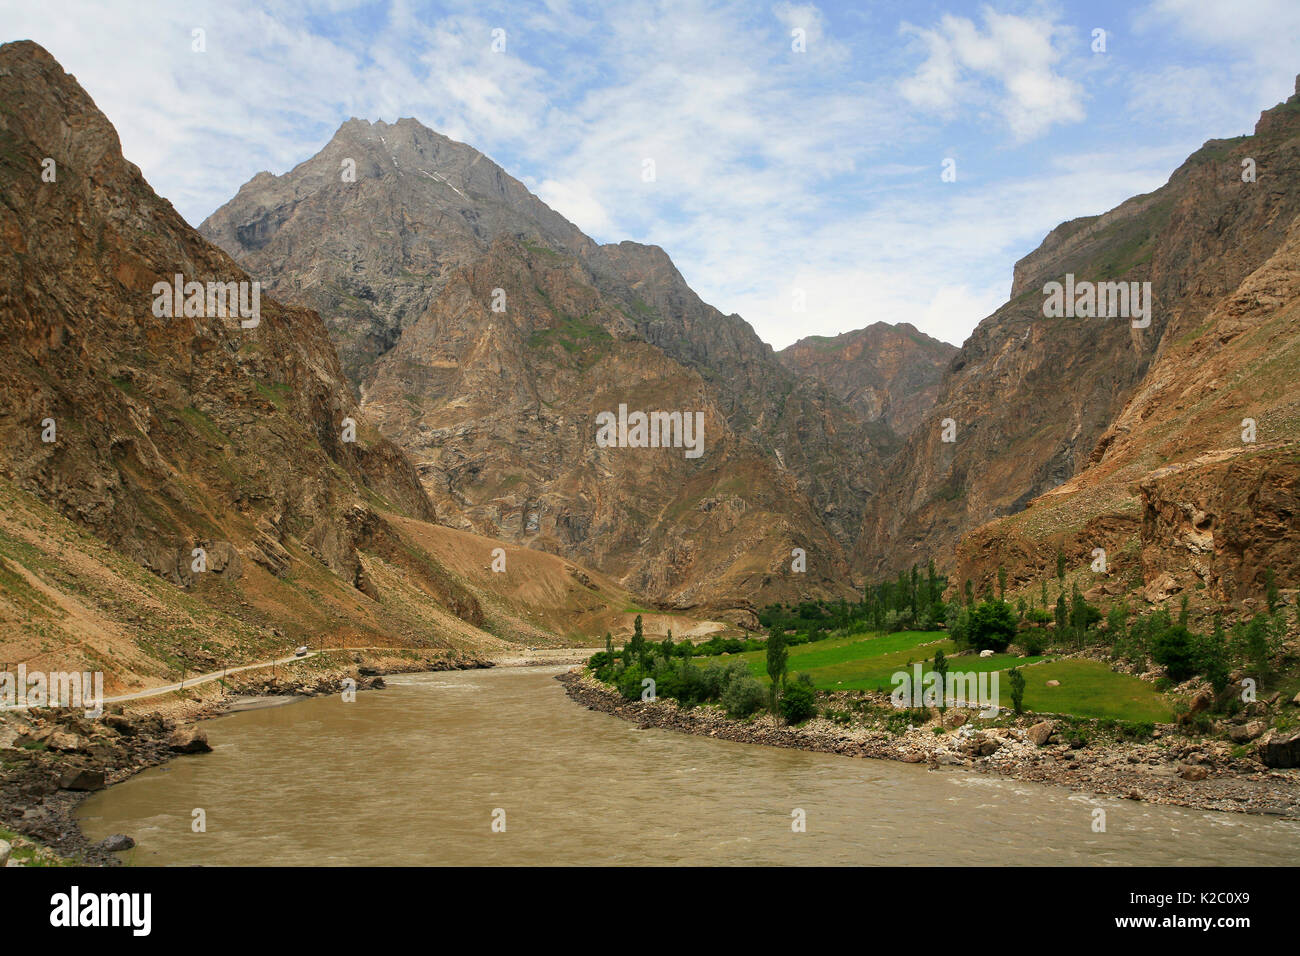 Pyandzh River Gorge lungo il confine tra il Tagikistan (sinistra) e Afghanistan (destra) Badakshan Regione, Pamir Mountains, dell'Asia centrale. Giugno. Foto Stock